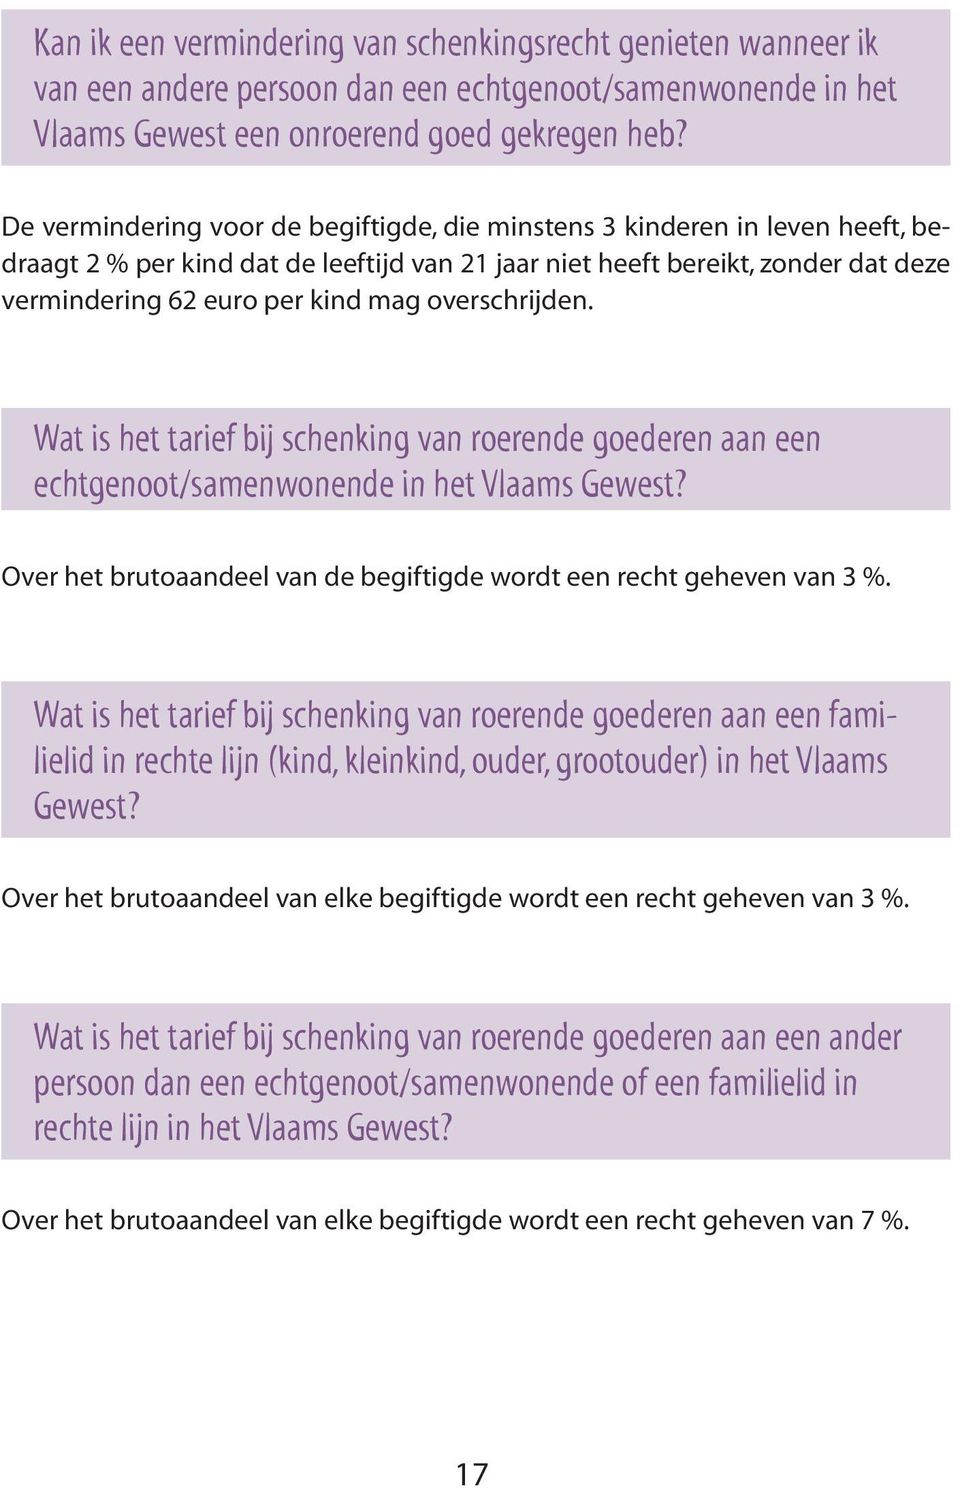 overschrijden. Wat is het tarief bij schenking van roerende goederen aan een echtgenoot/samenwonende in het Vlaams Gewest? Over het brutoaandeel van de begiftigde wordt een recht geheven van 3 %.